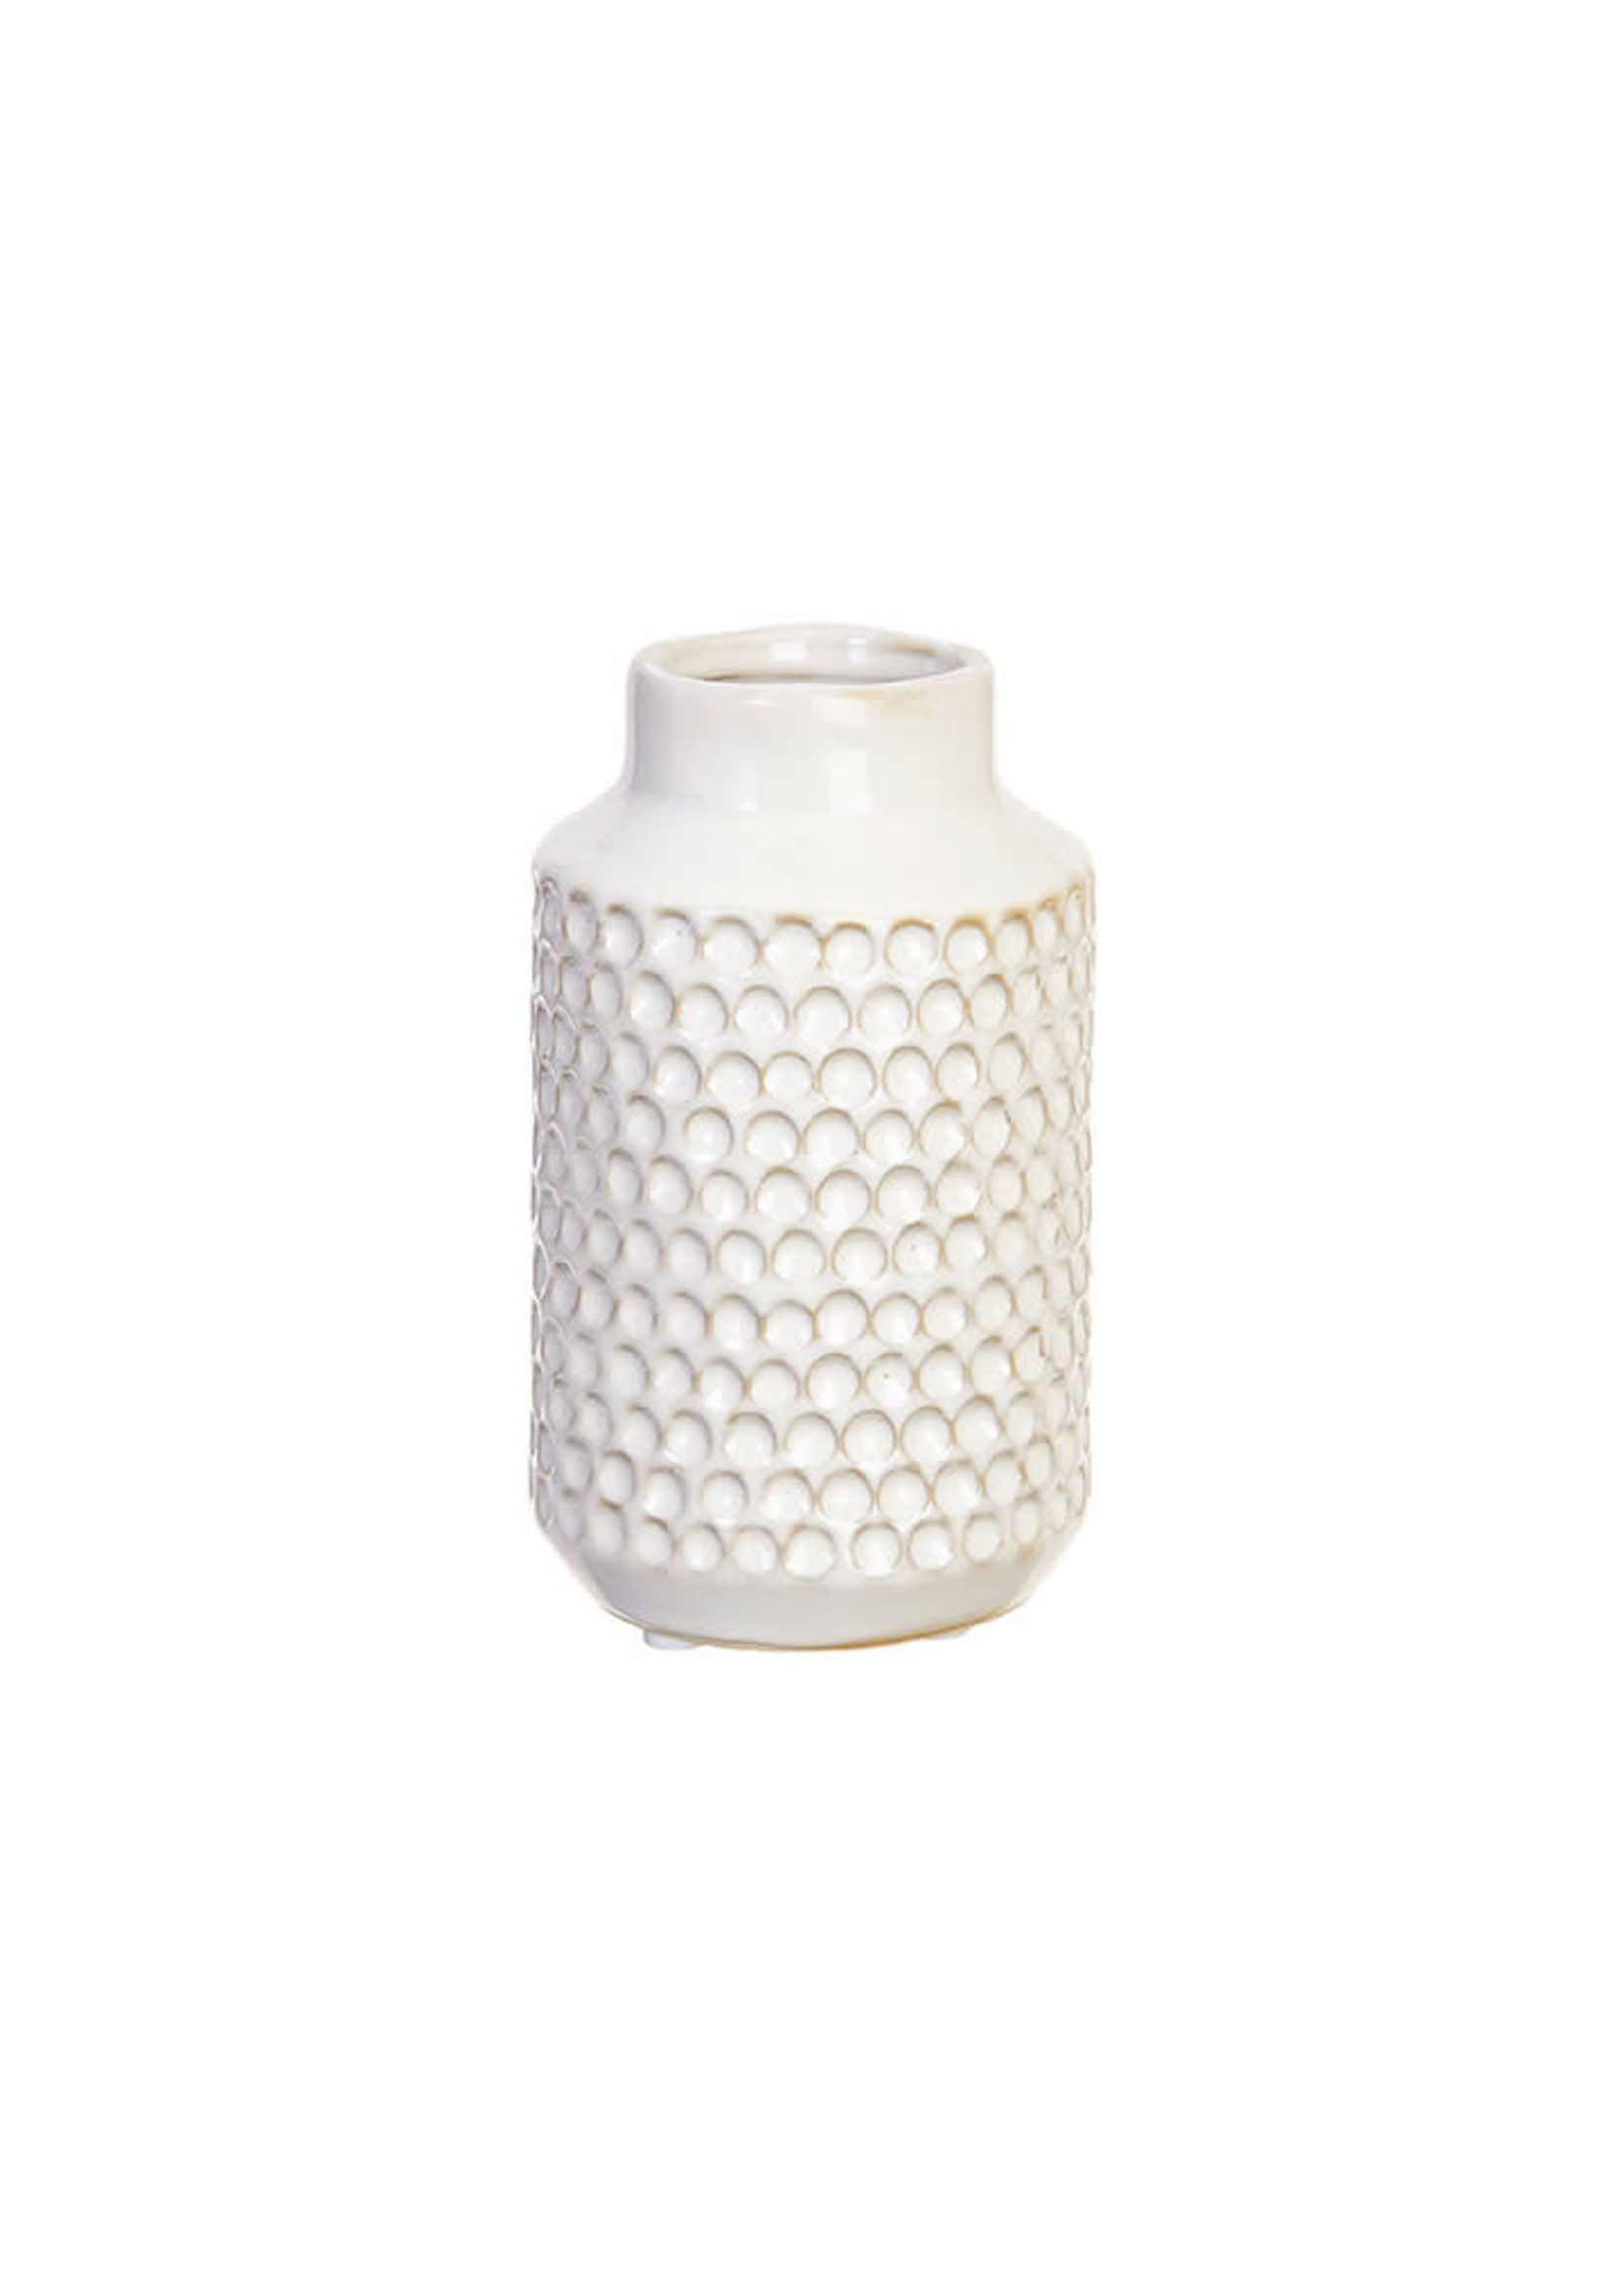 6.5in White Textured Vase